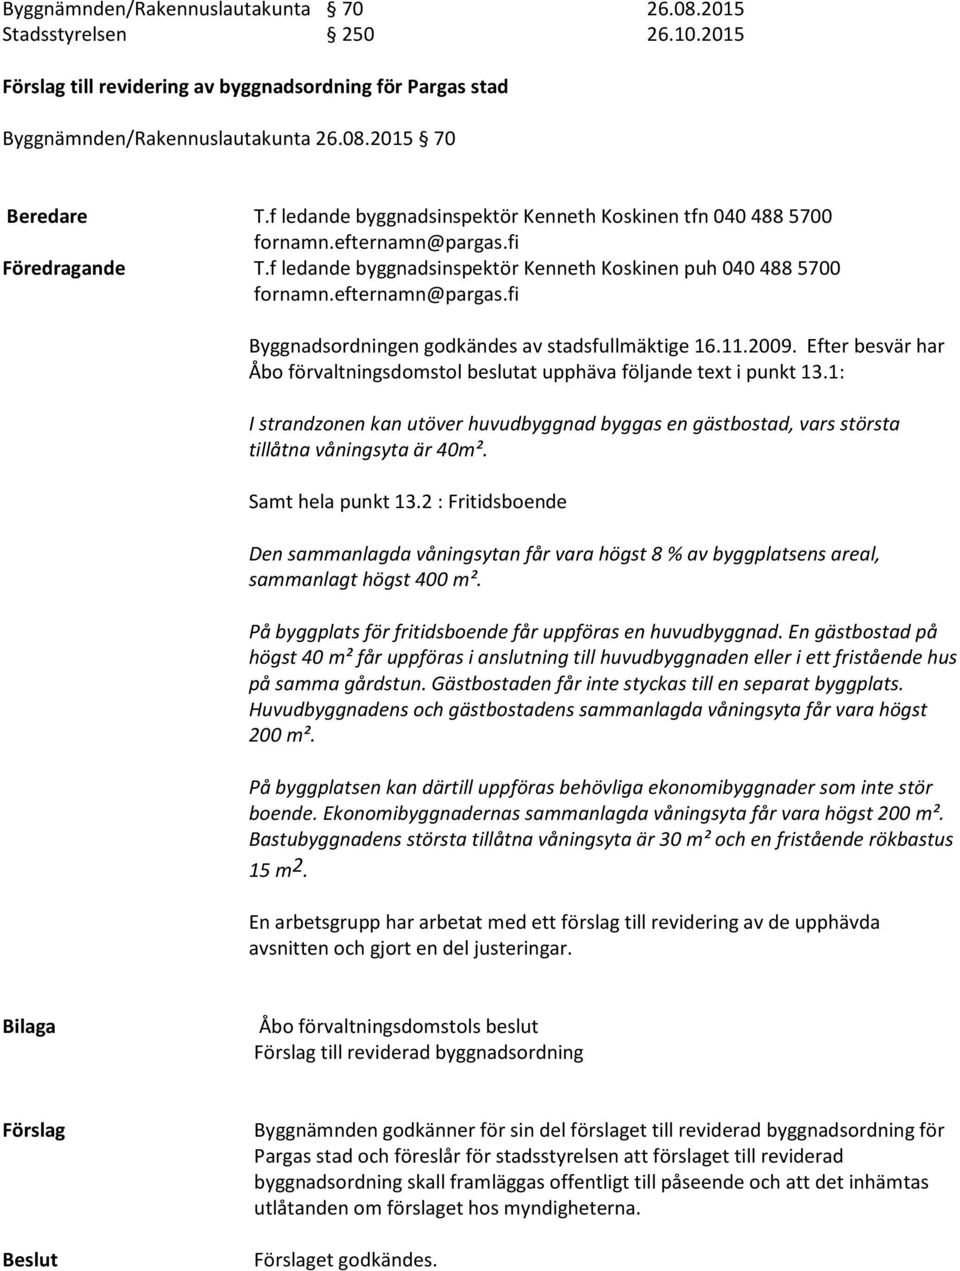 Efter besvär har Åbo förvaltningsdomstol beslutat upphäva följande text i punkt 13.1: I strandzonen kan utöver huvudbyggnad byggas en gästbostad, vars största tillåtna våningsyta är 40m².